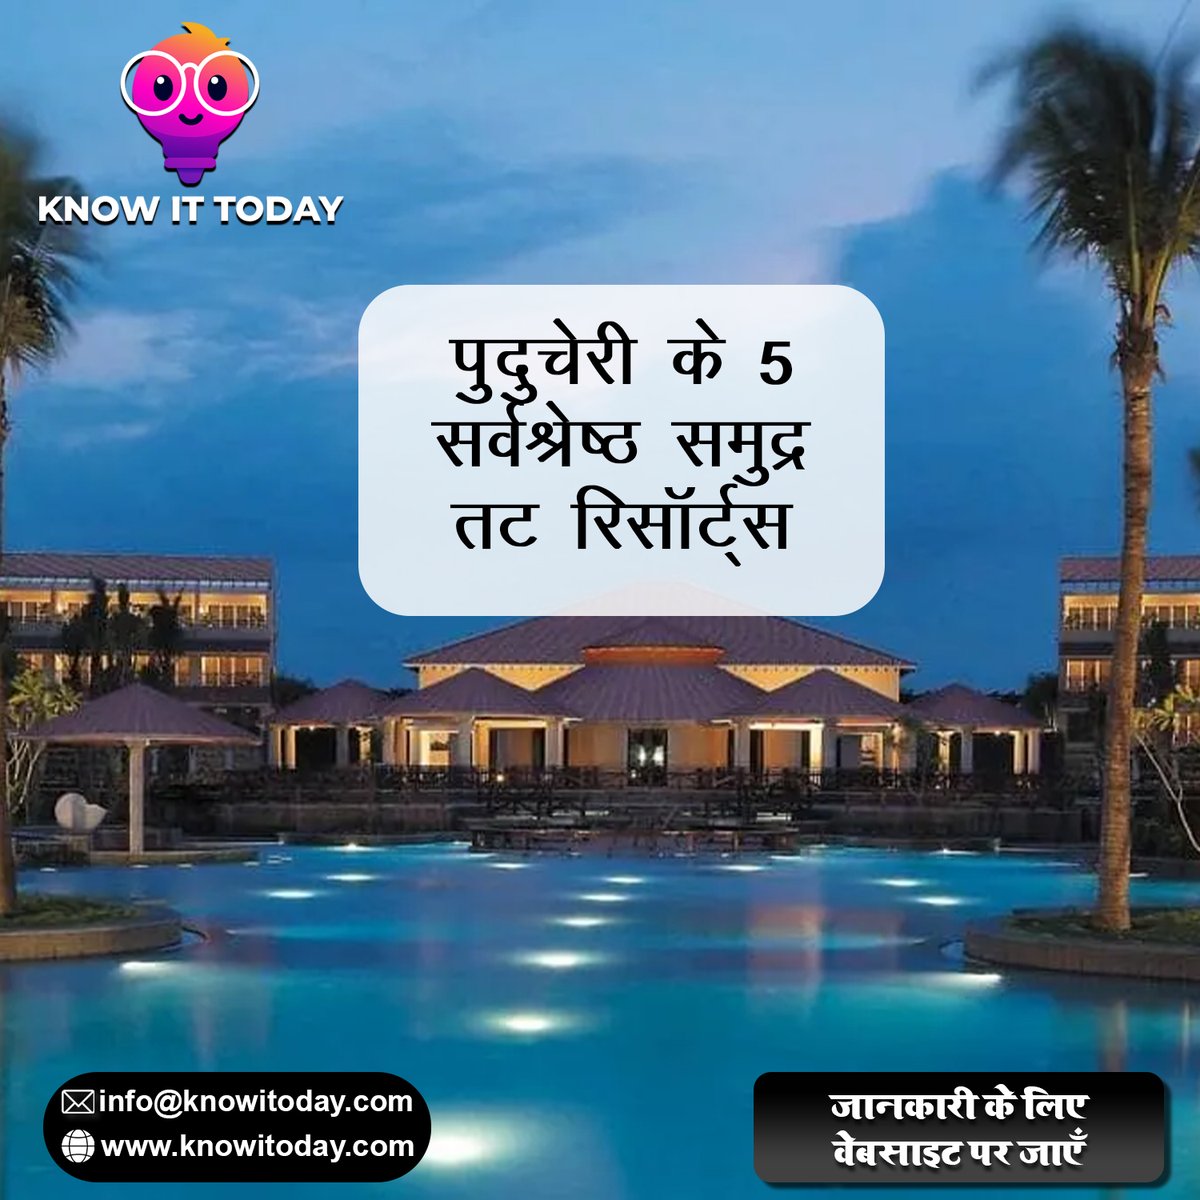 पुदुचेरी के 5 सर्वश्रेष्ठ समुद्र तट रिसॉर्ट्स
knowitoday.com/2023/06/15/5-b…

#Puducherry #puducherrynews #resorts #resortstyle #resortstyleliving #india #indianfood